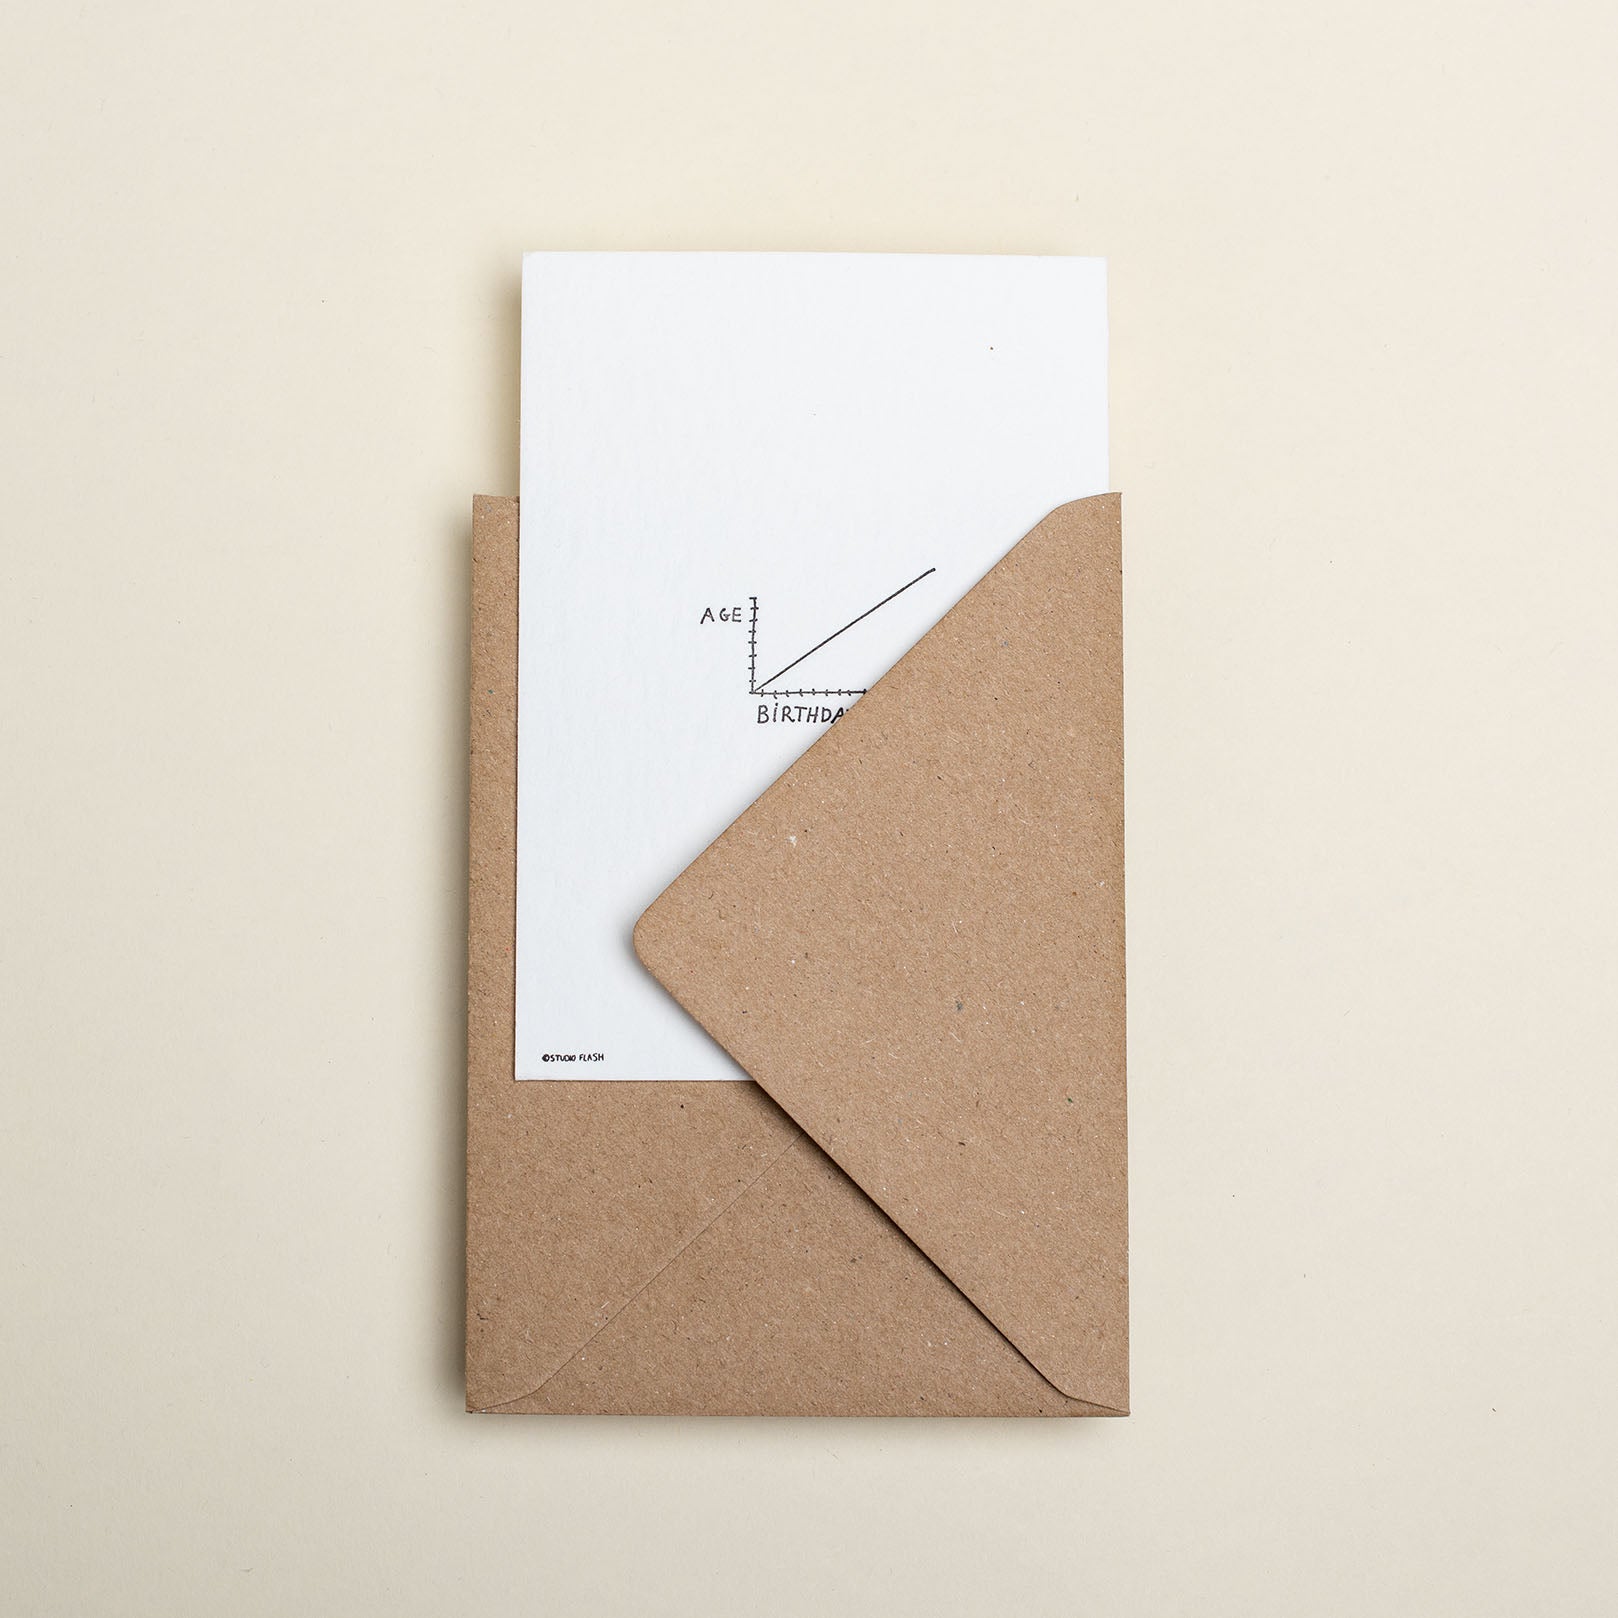 Schwarz weiße Postkarte bedruckte auf Baumwollpapier mit den Maßen 14,8 x 10,5 cm von Studio Flash. Auf der Karte ist eine Skala zwischen Age und Birthdays zu sehen. Die Postkarte ist in einem Kartonfarbenden Umschlag.